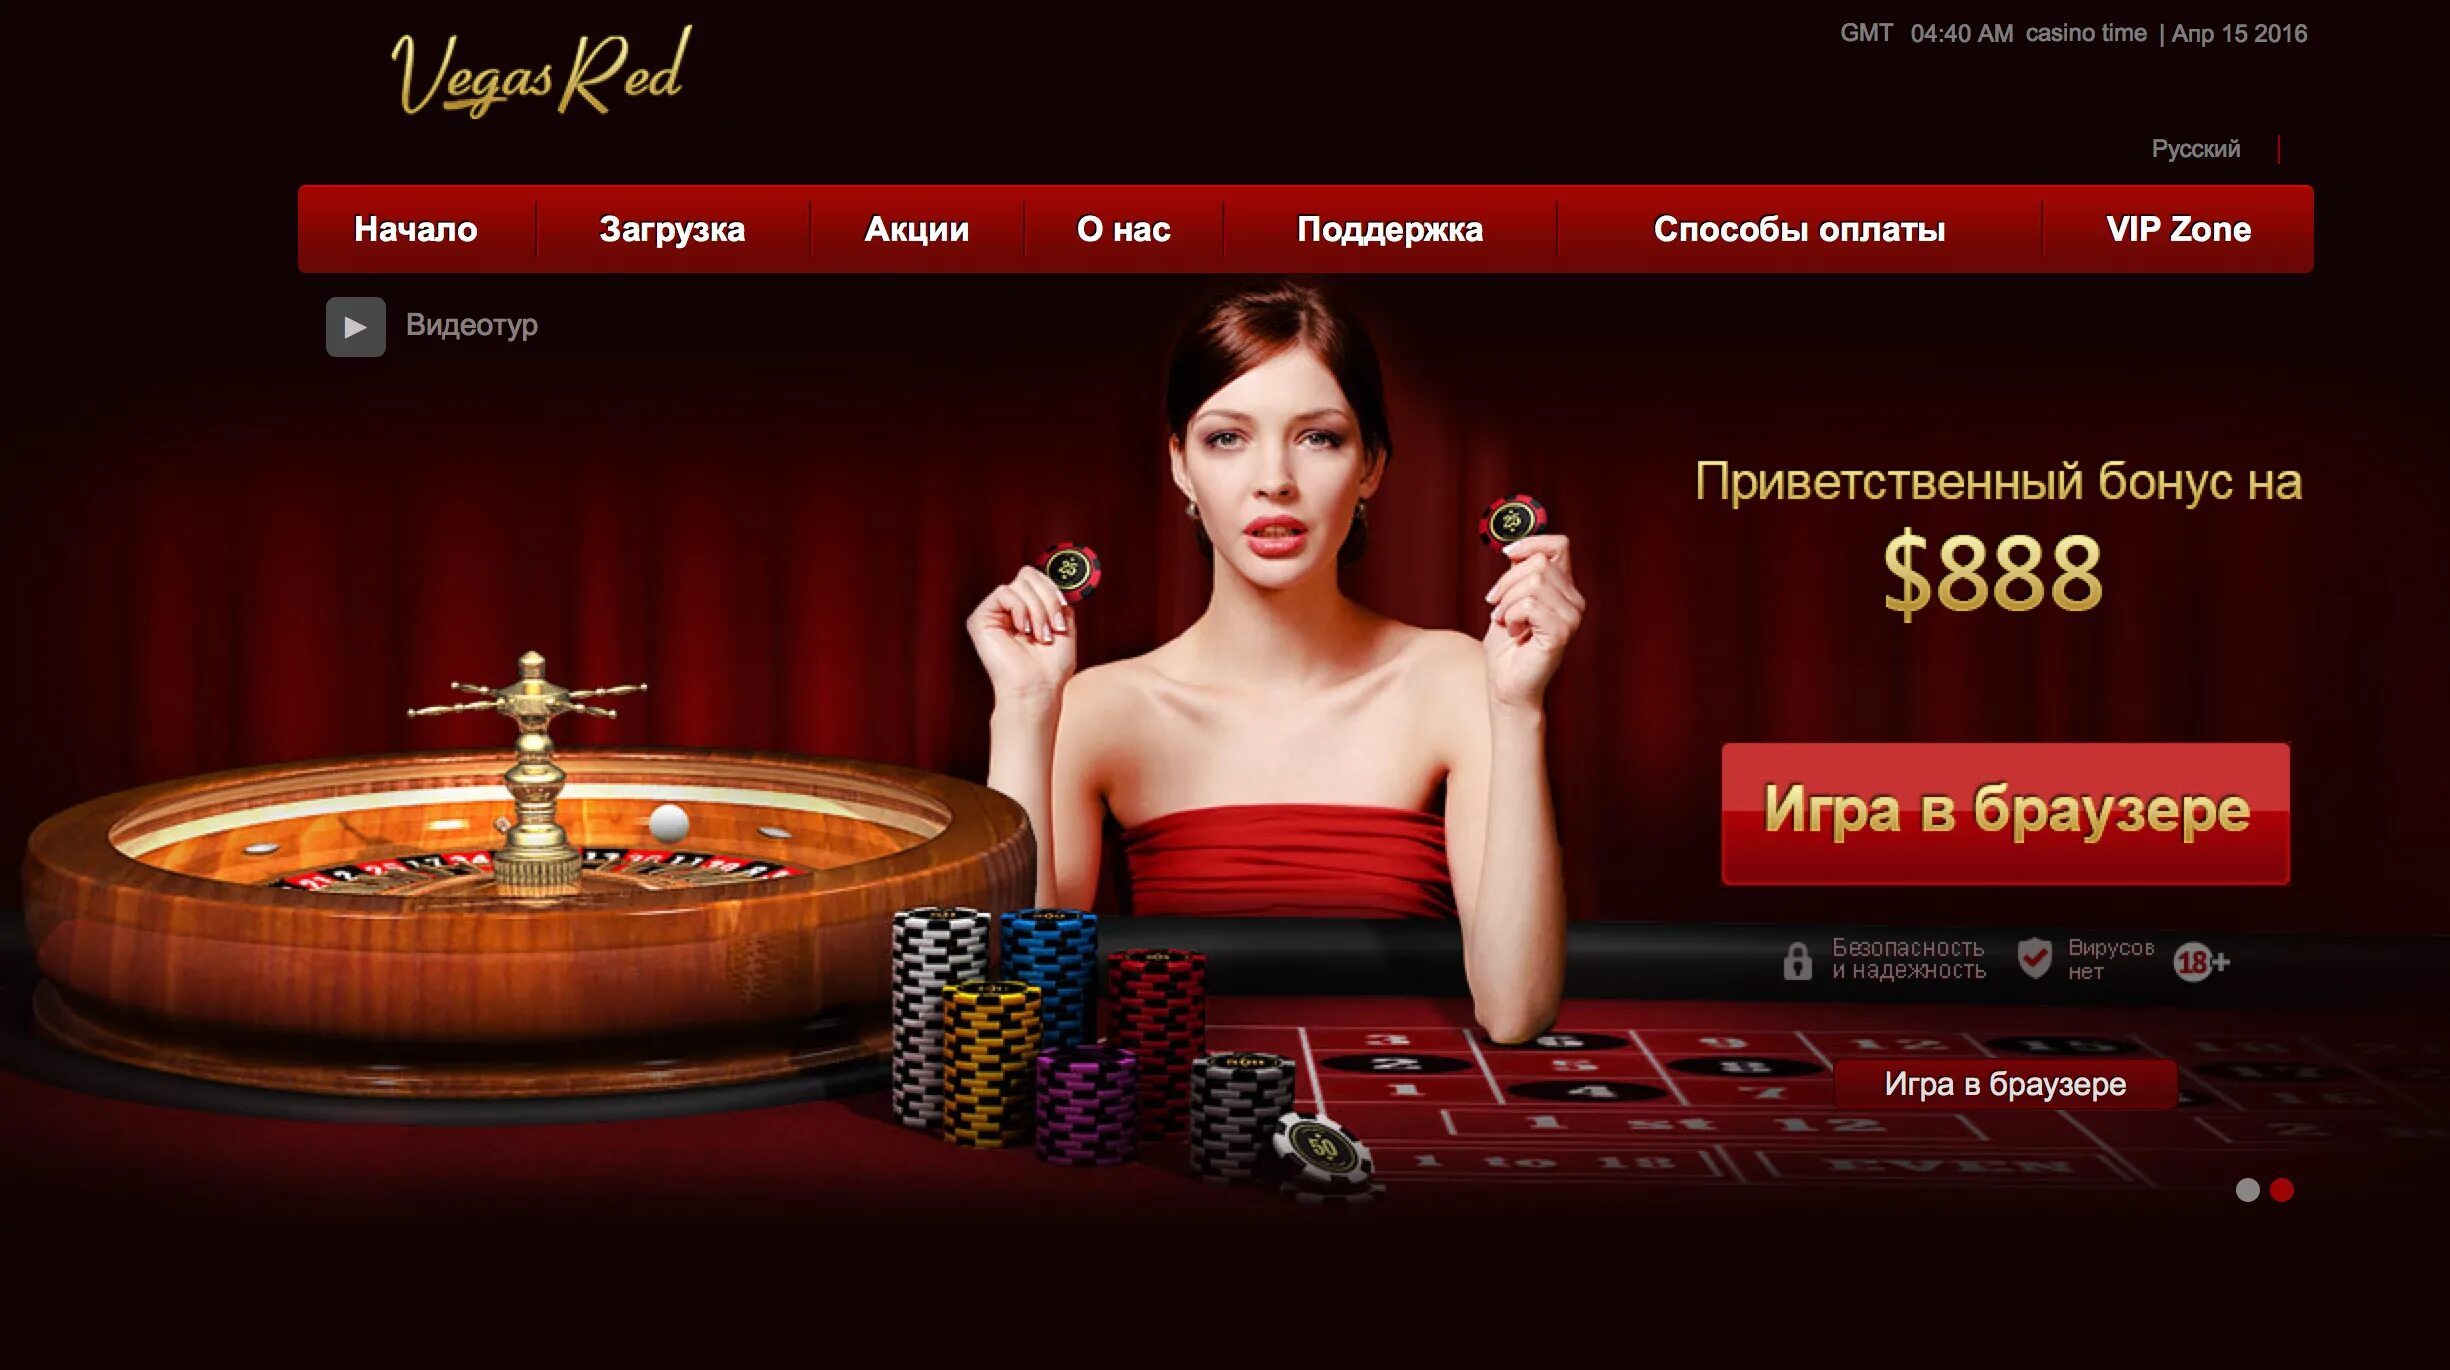 Официальные сайты casino pingotop. Казино. Интернет казино. Сайты казино. Реклама казино.